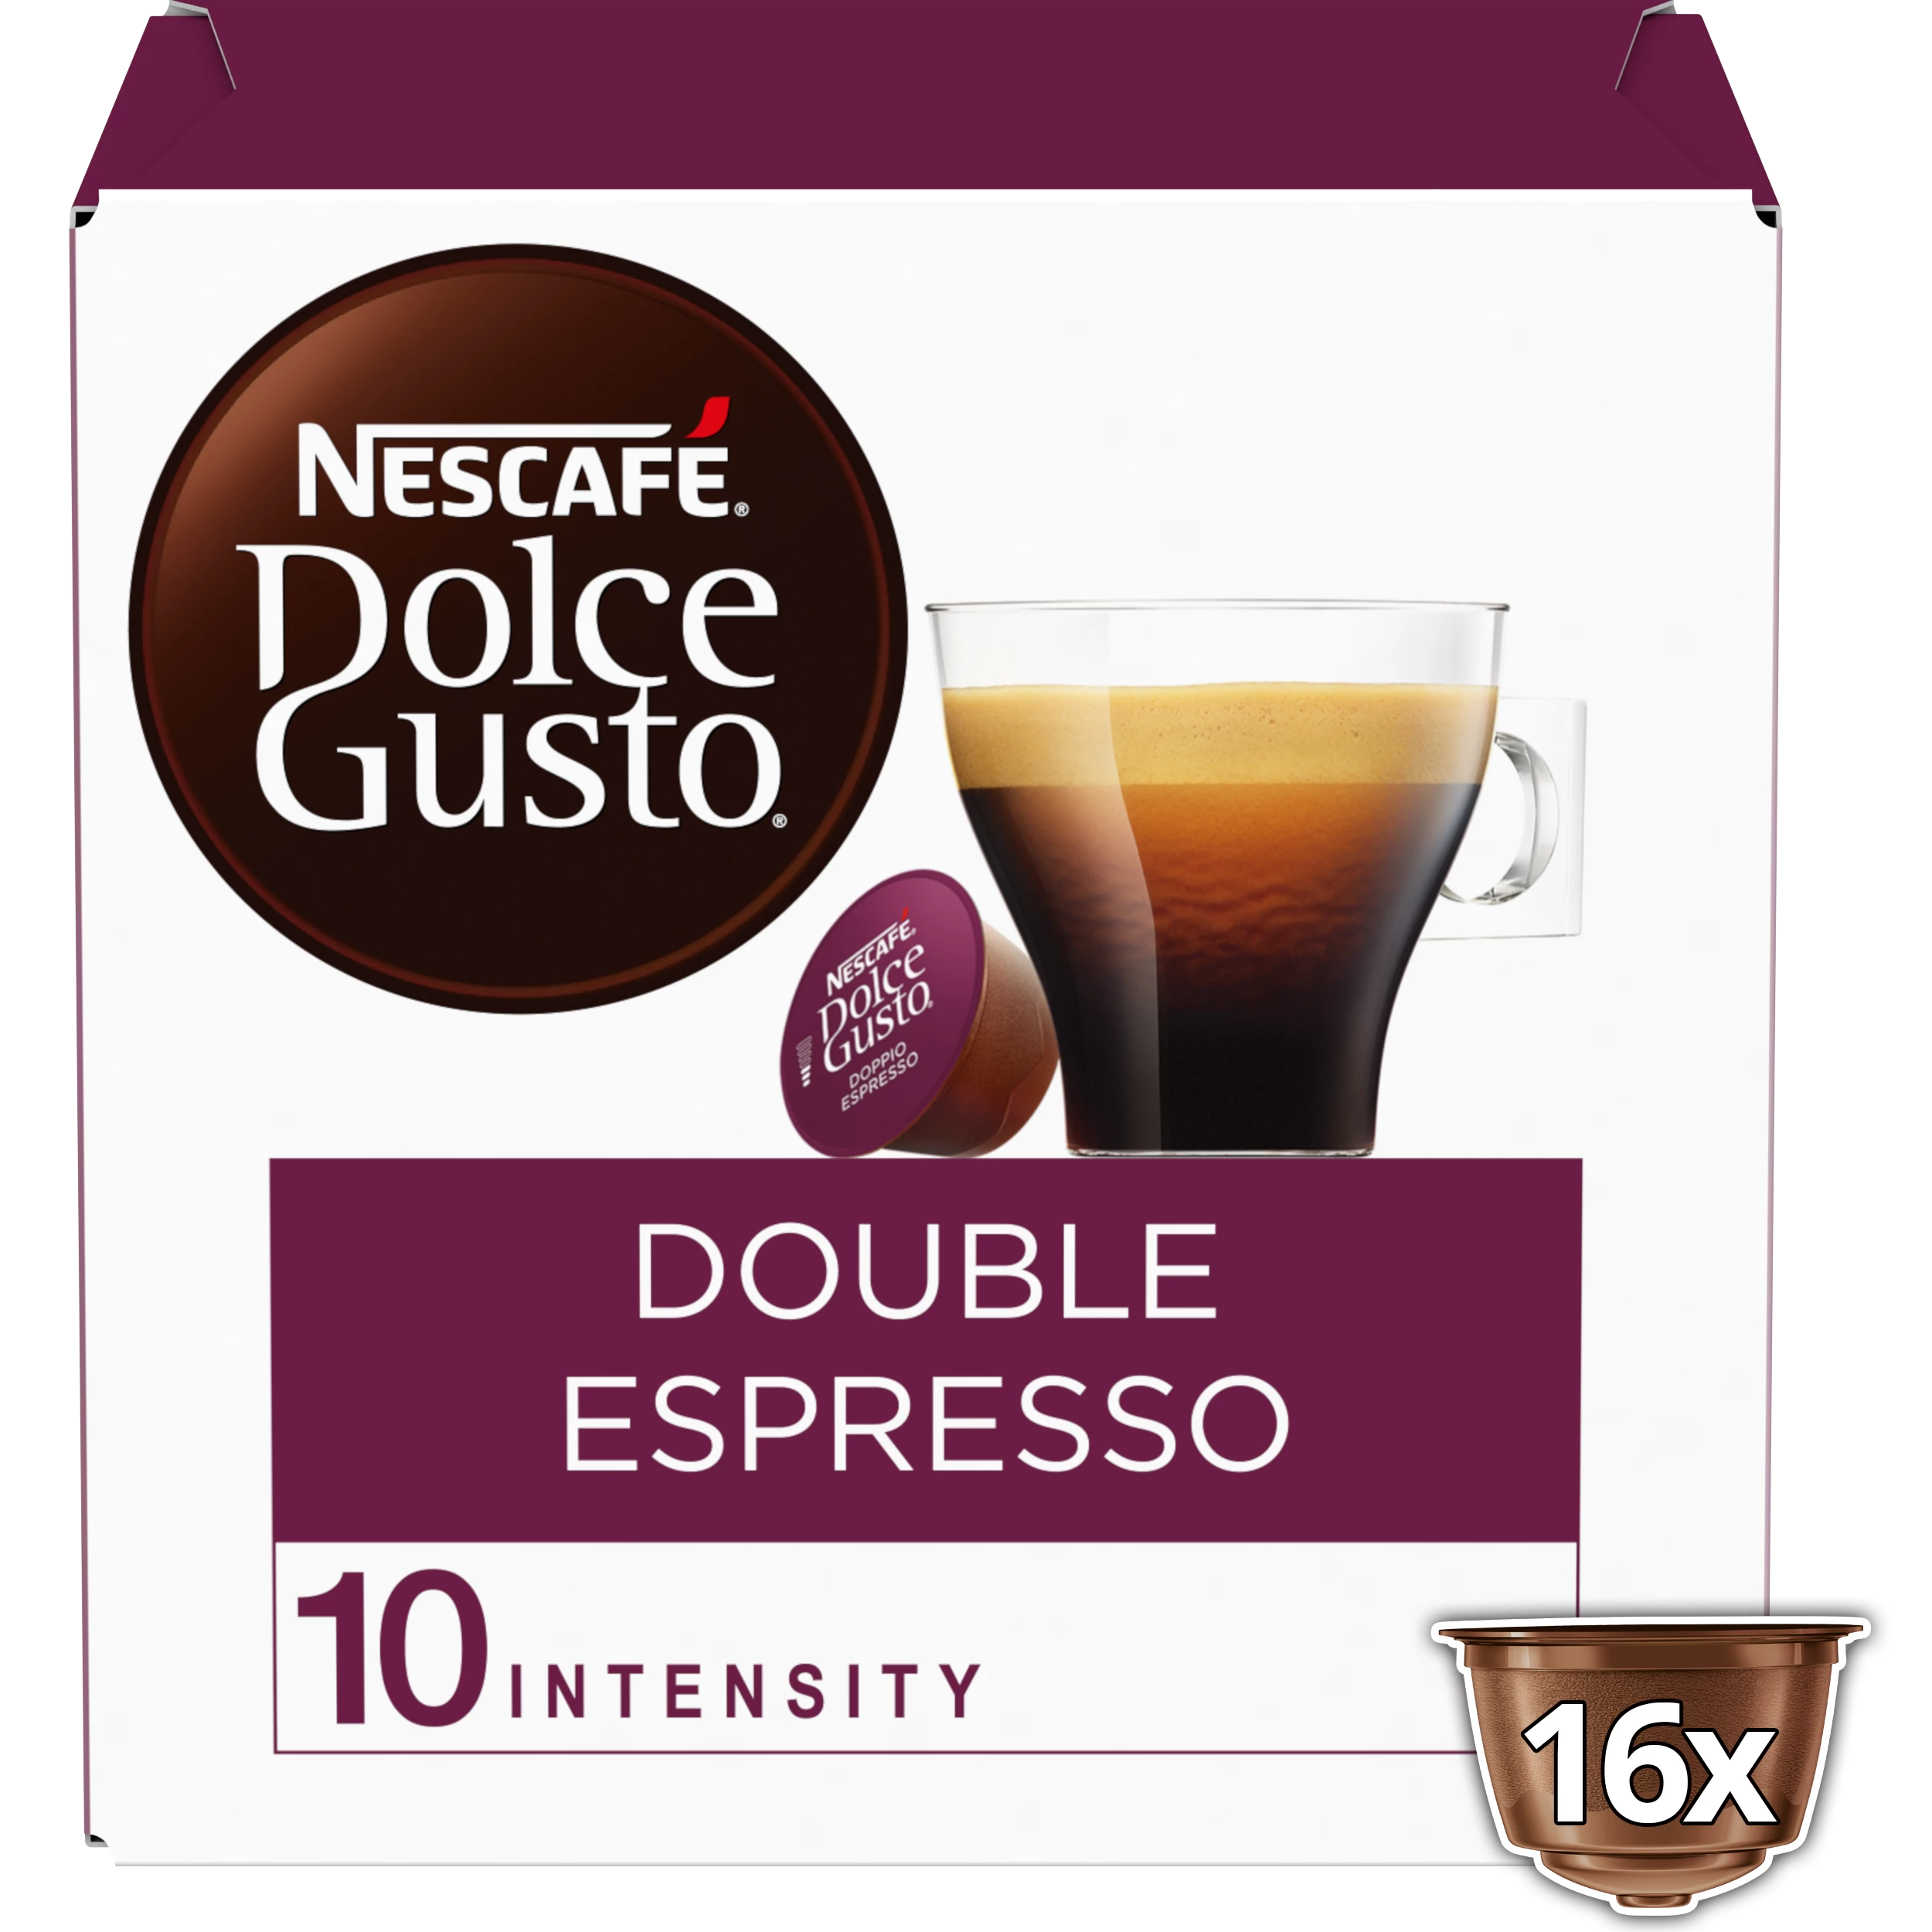 كبسولات قهوة مزدوجة اسبريسو متوافقة مع دولتشي غوستو x16؛ 136 جرام - NESCAFE DOLCE GUSTO